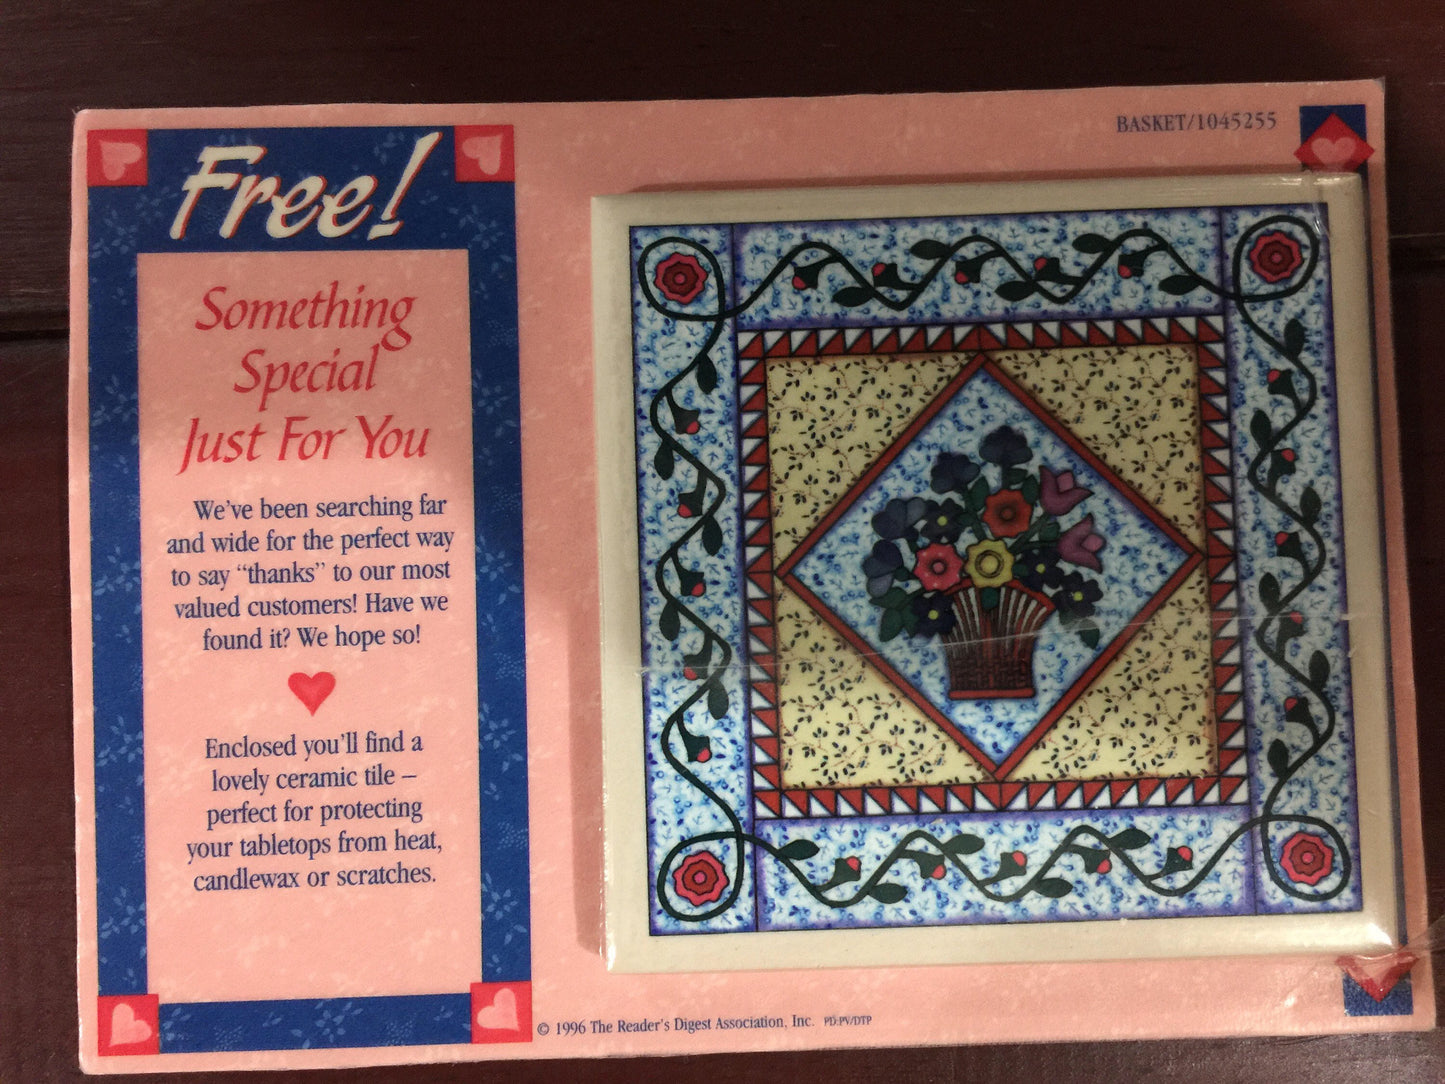 The Reader's Digest Association Inc. Basket 1045255, Vintage 1996, Collectible Advertising ceramic tile